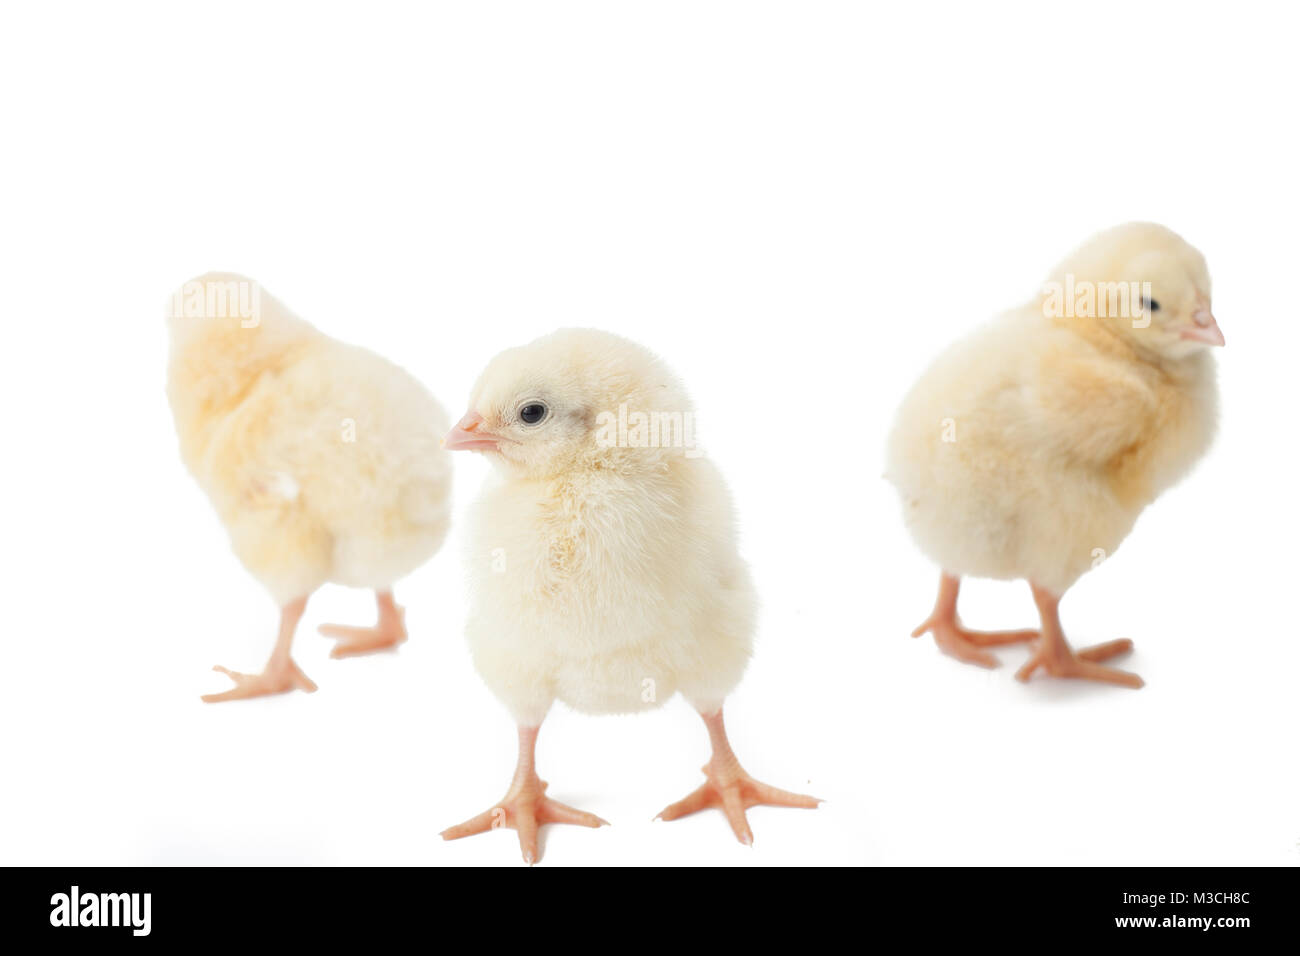 Les petits poulets de Pâques jaune moelleux sur fond blanc Banque D'Images